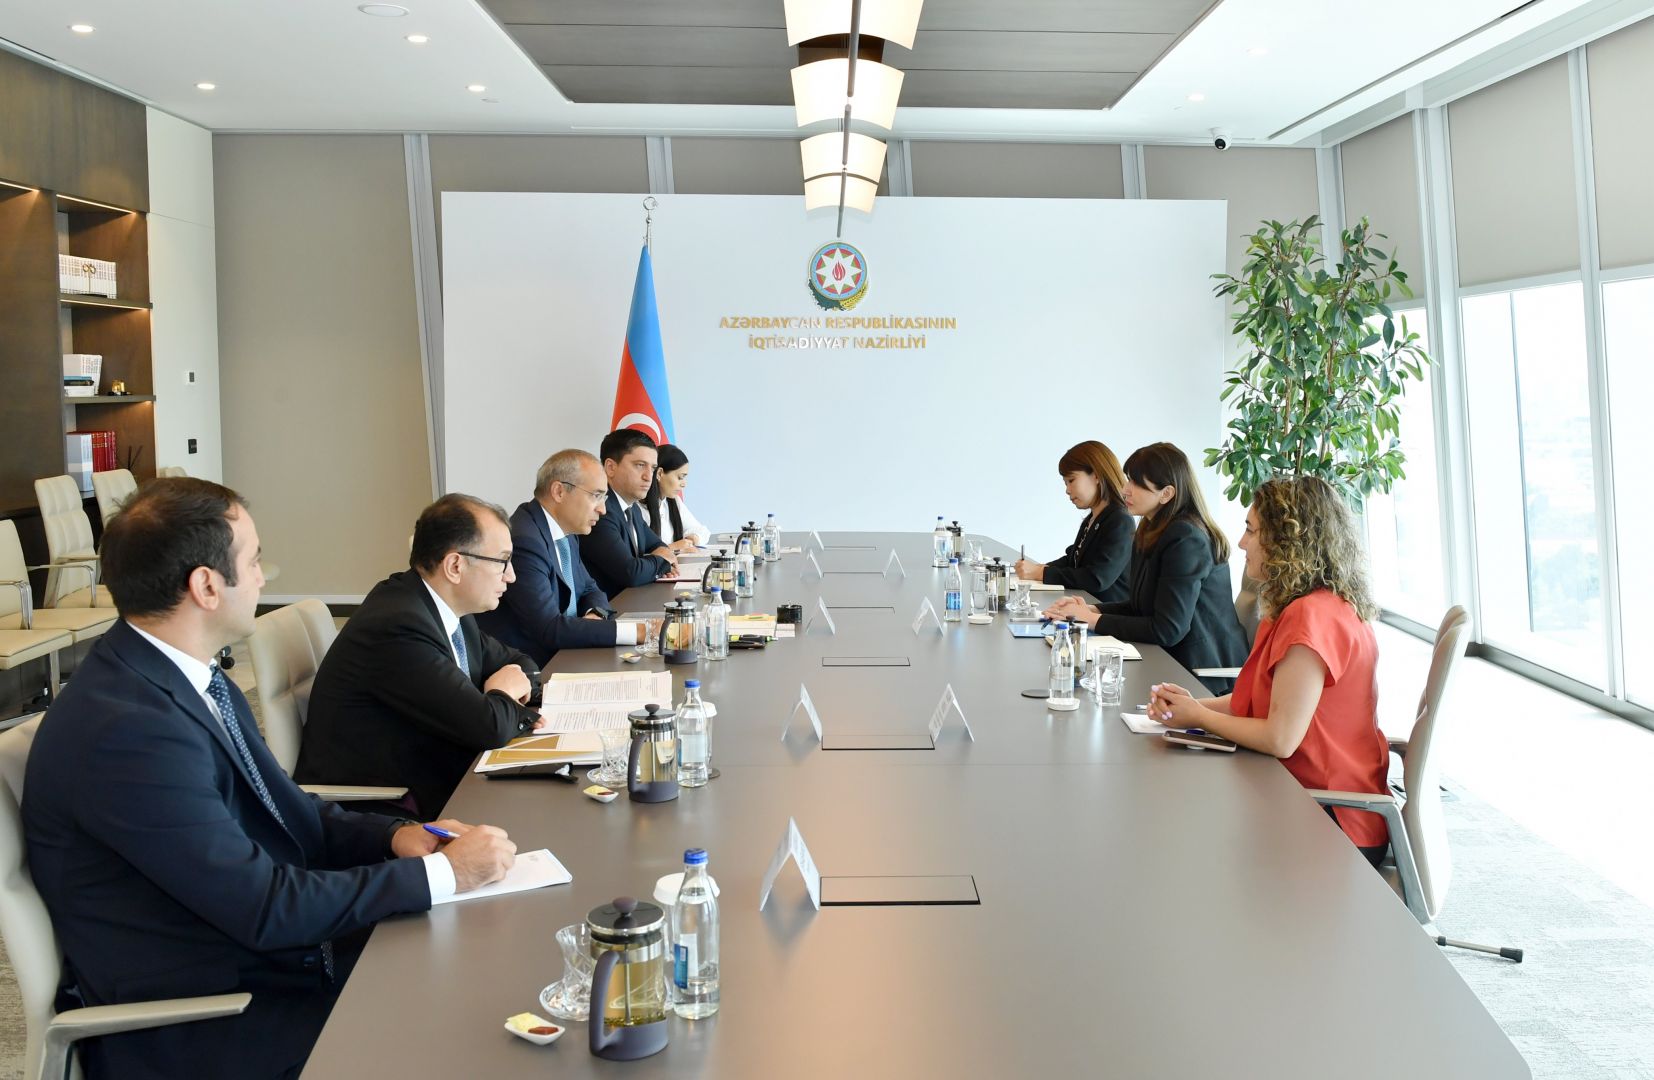 Azerbaijan's economy minister receives UN Resident Coordinator in Azerbaijan [PHOTOS]